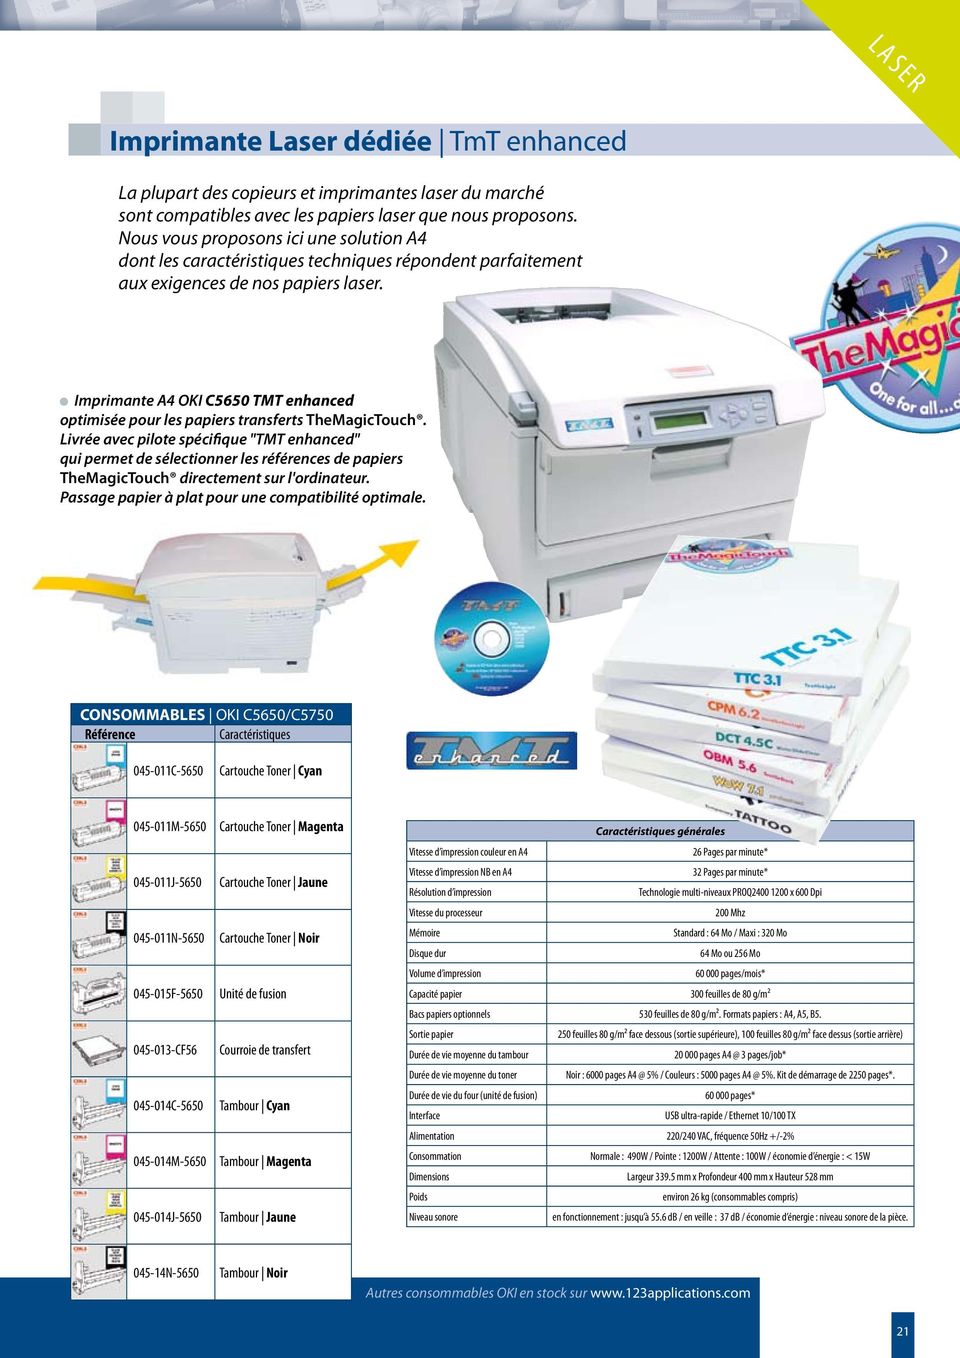 Imprimante OKI C5650 TMT enhanced optimisée pour les papiers transferts TheMagicTouch.